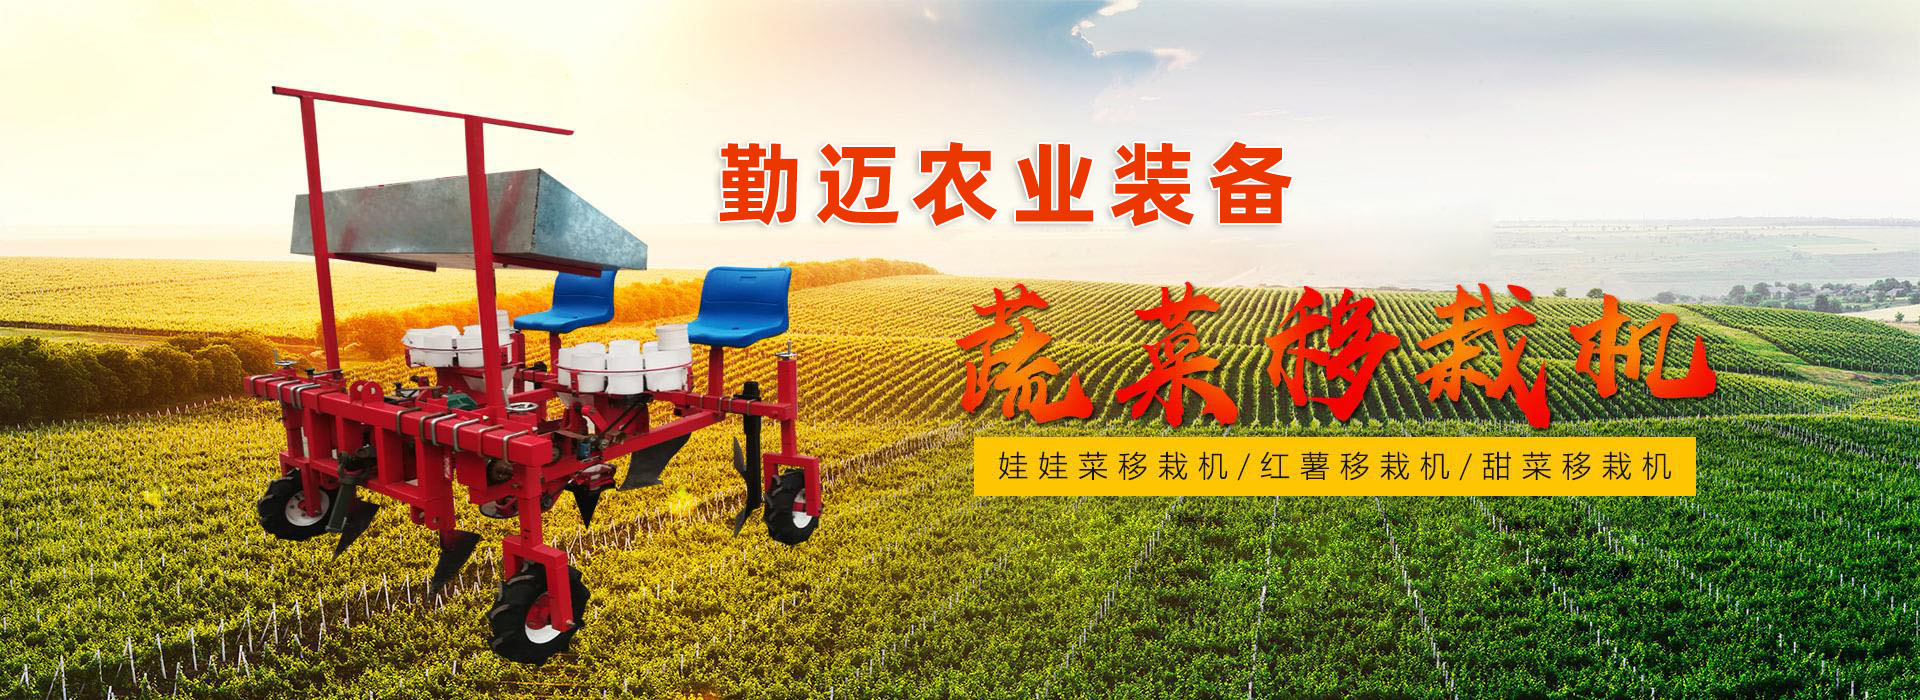 潍坊市勤迈农业装备有限公司